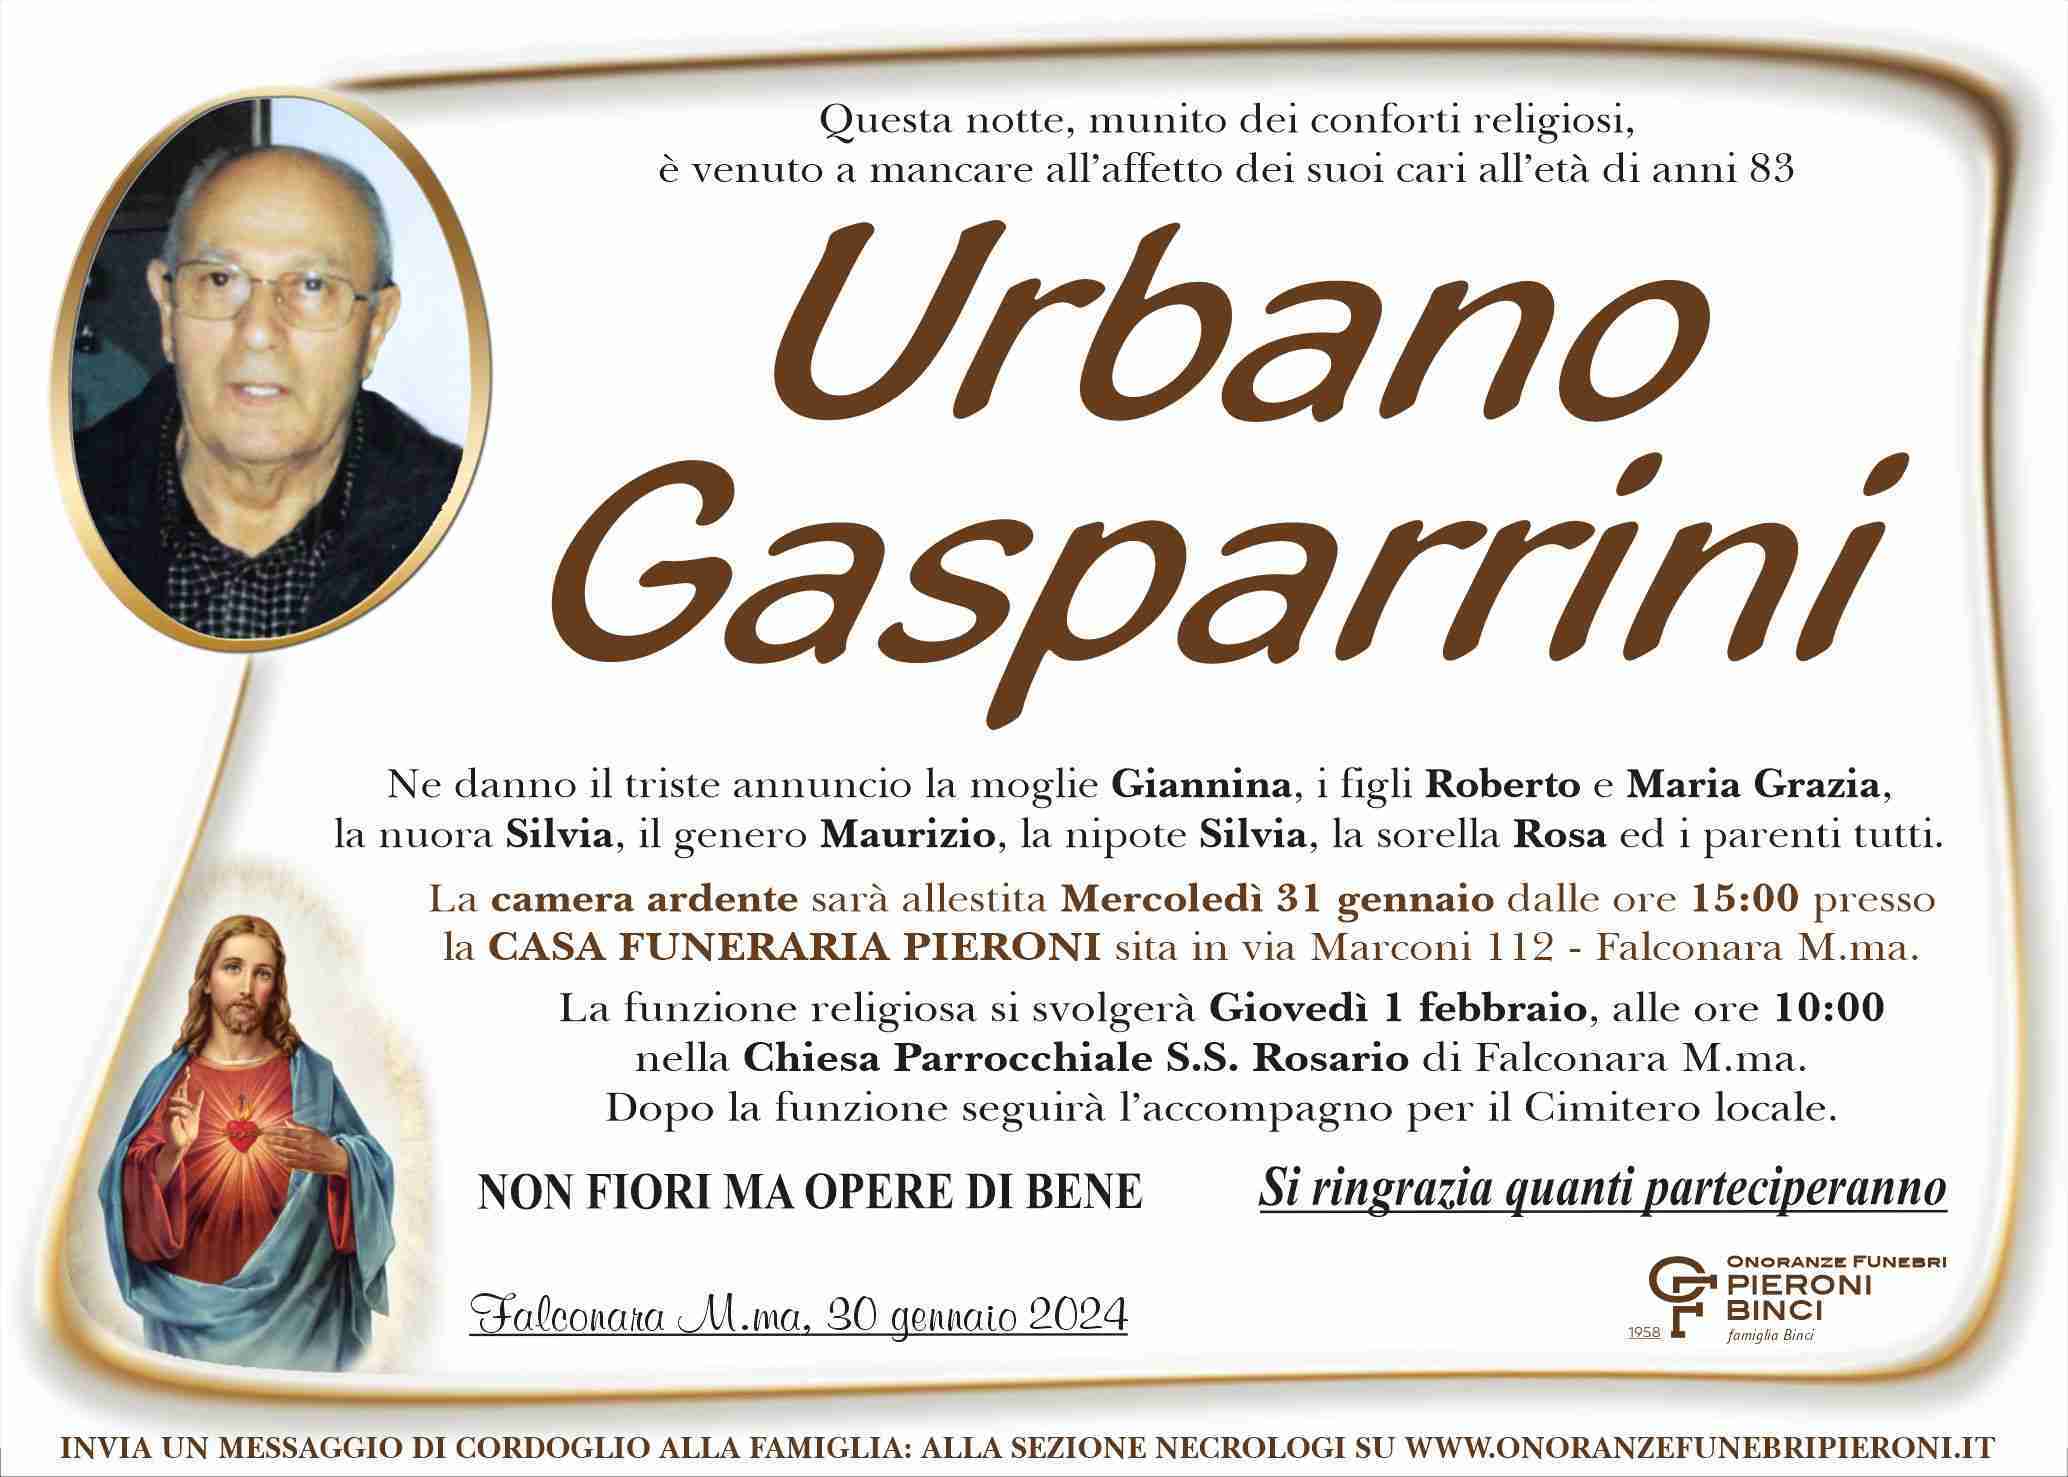 Urbano Gasparrini